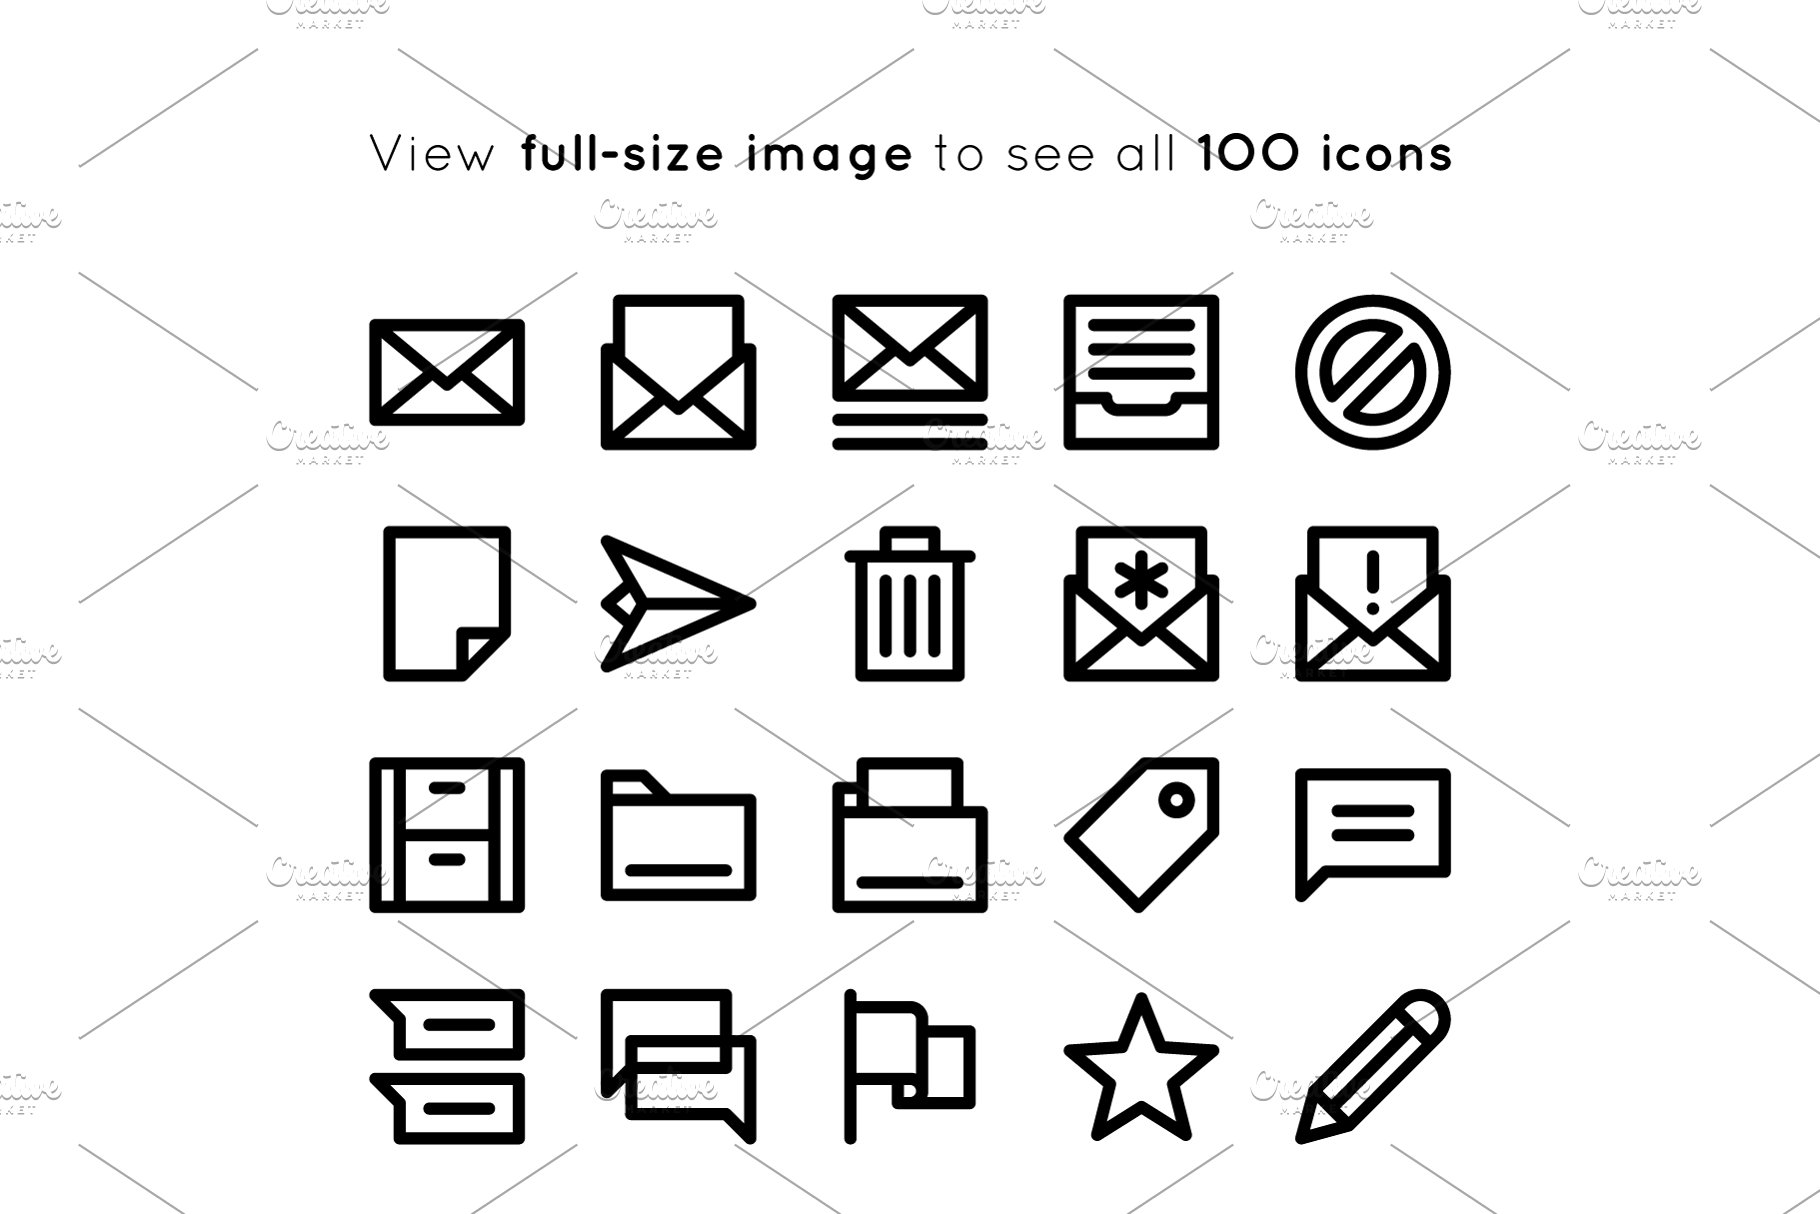 粗线条用户界面图标元素 BOLD icons User Interface essentials插图(4)